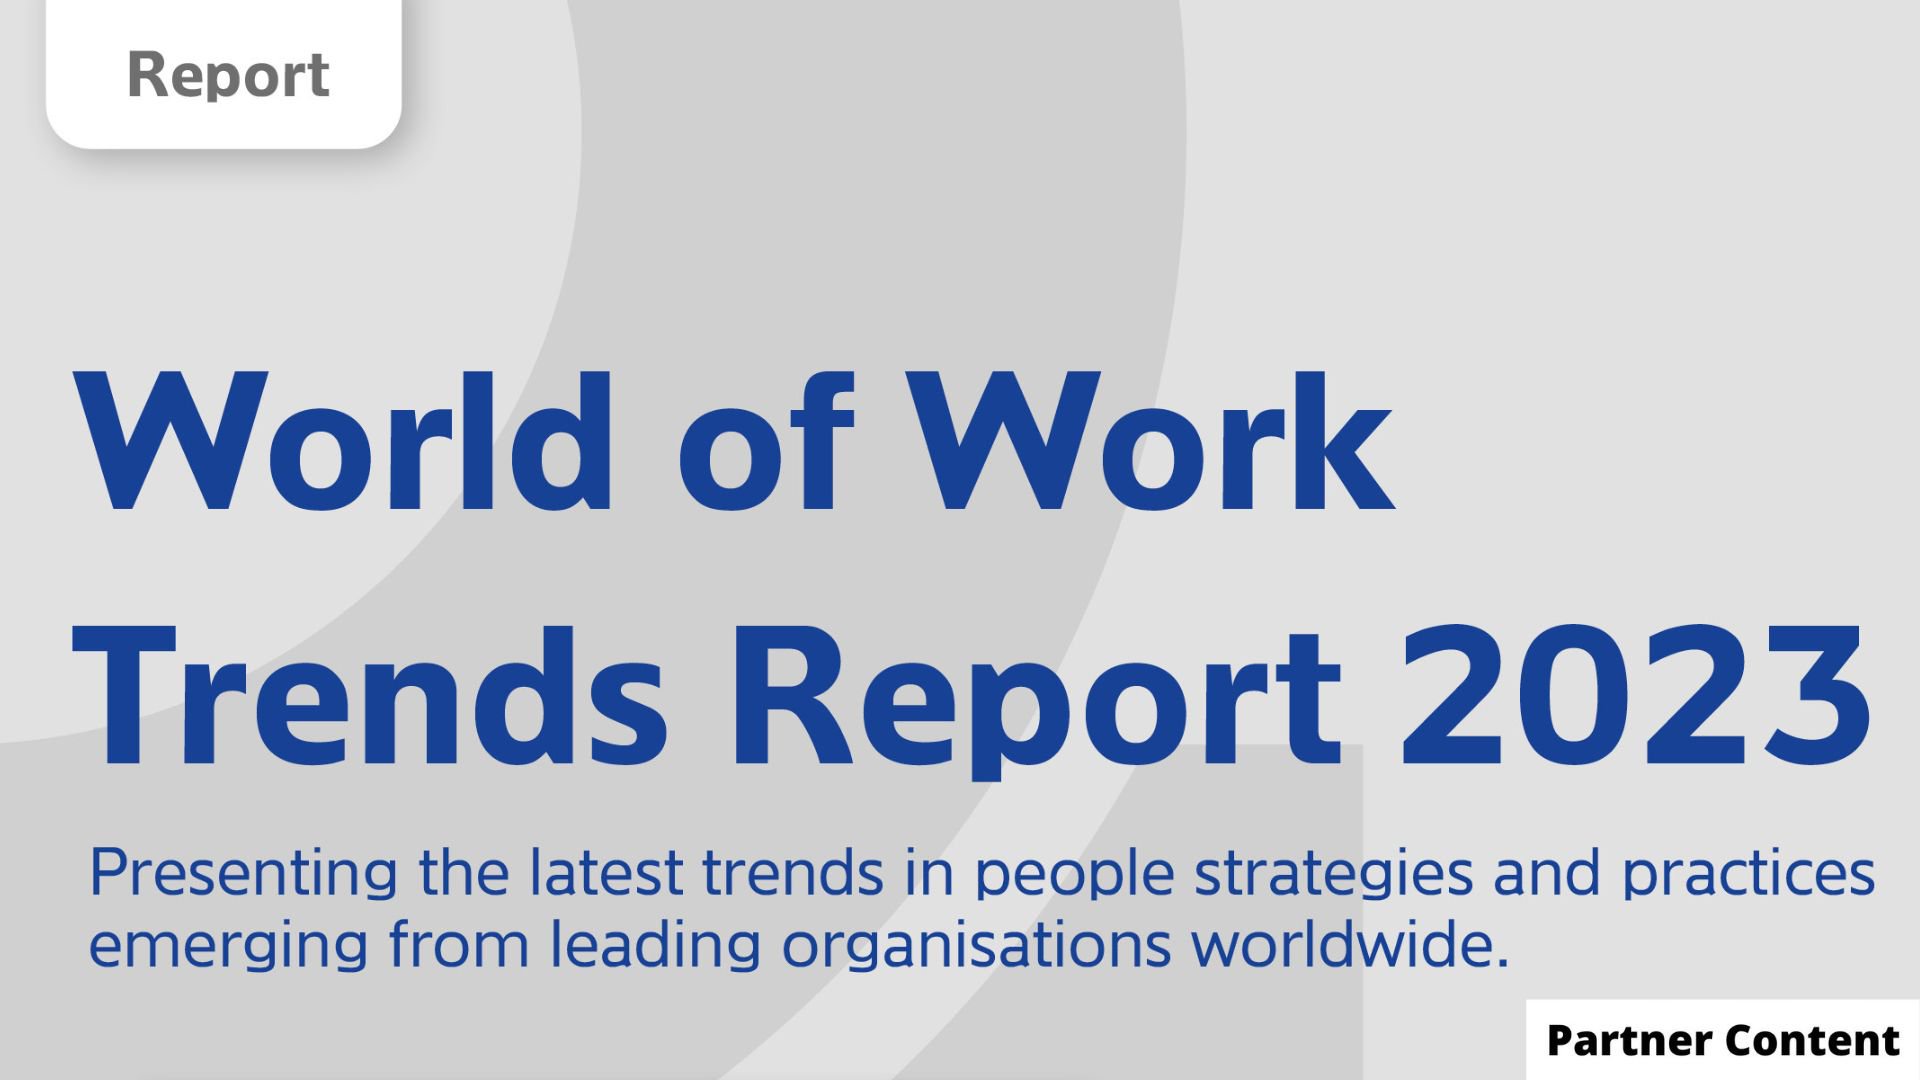 De belangrijkste HR trends van 2023 volgens het World of Work Trends Report 2023: purpose, personalisering en leiderschap